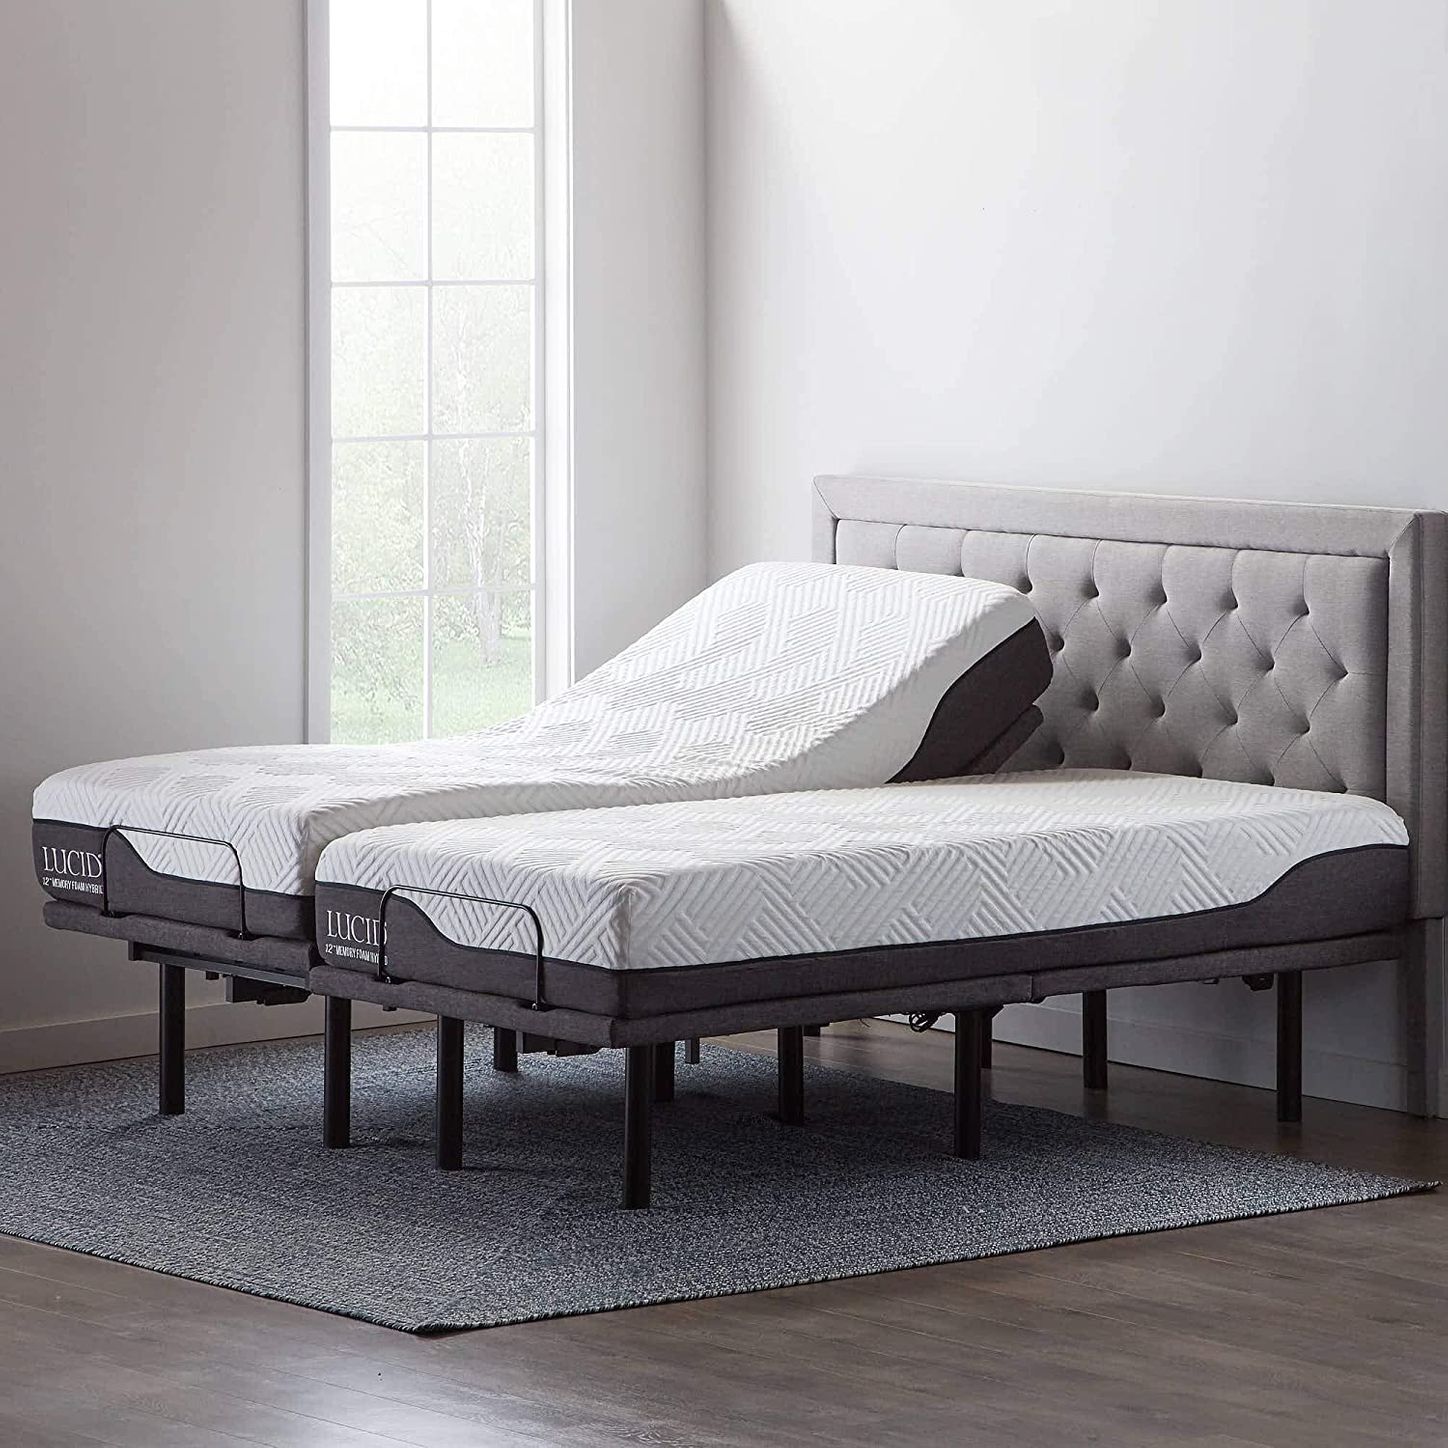 10 Best Adjustable Bed Bases 2021 The, Adjustable Split Beds King Size